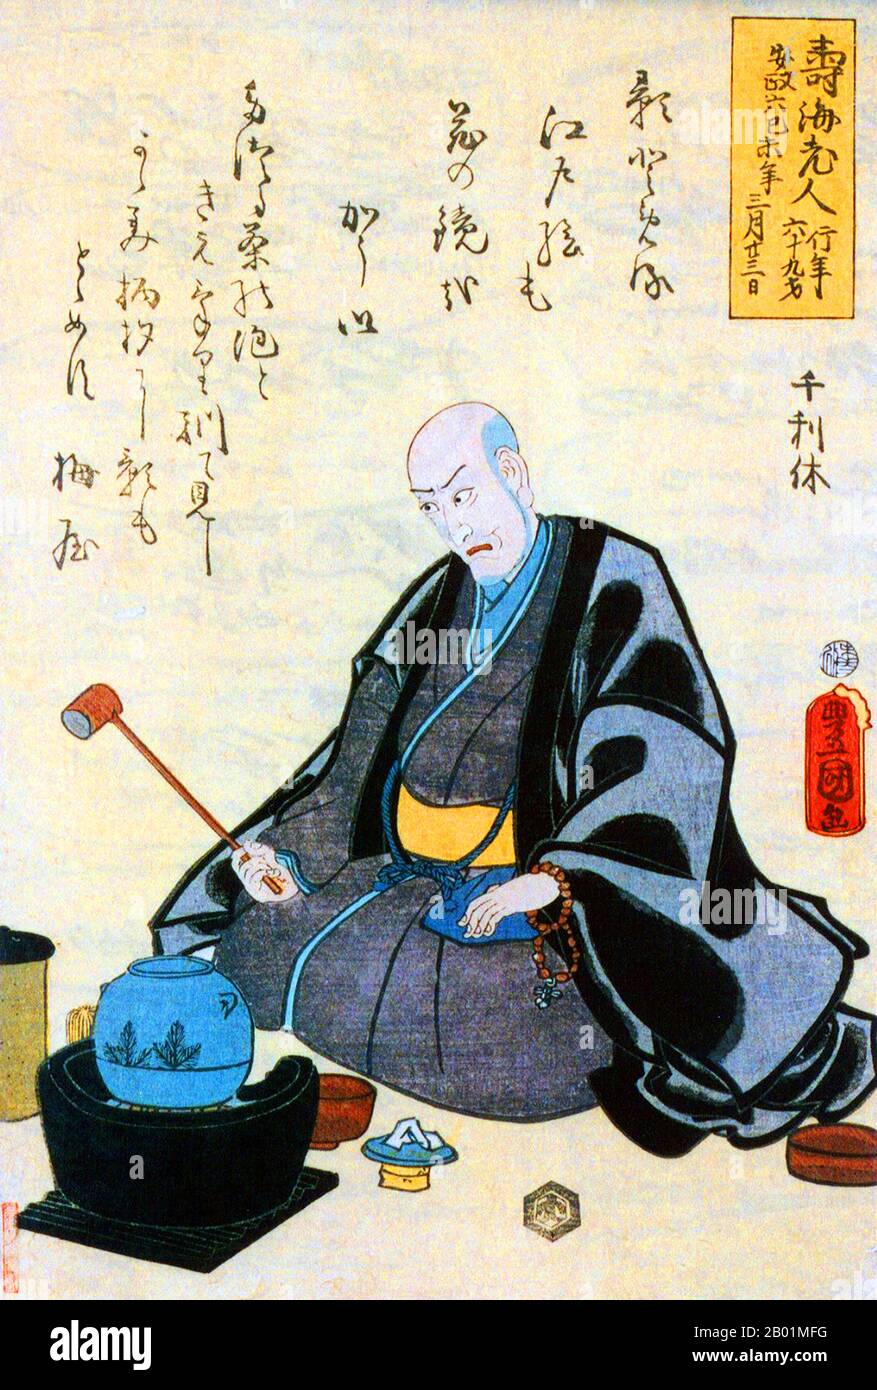 Giappone: Ukiyo-e Woodblock print of Sen no Rikyu (1522 - 21 aprile 1591), Japanese Tea Master, 1859. SEN no Rikyū, noto anche semplicemente come Sen Rikyū, è considerato la figura storica con la più profonda influenza sul chanoyu, la "via del tè" giapponese, in particolare la tradizione del wabi-cha. Fu anche il primo a sottolineare diversi aspetti chiave della cerimonia, tra cui la semplicità rustica, la prontezza di approccio e l'onestà di sé. Originari del periodo Edo e del periodo Muromachi, questi aspetti della cerimonia del tè persistono ancora oggi. Foto Stock